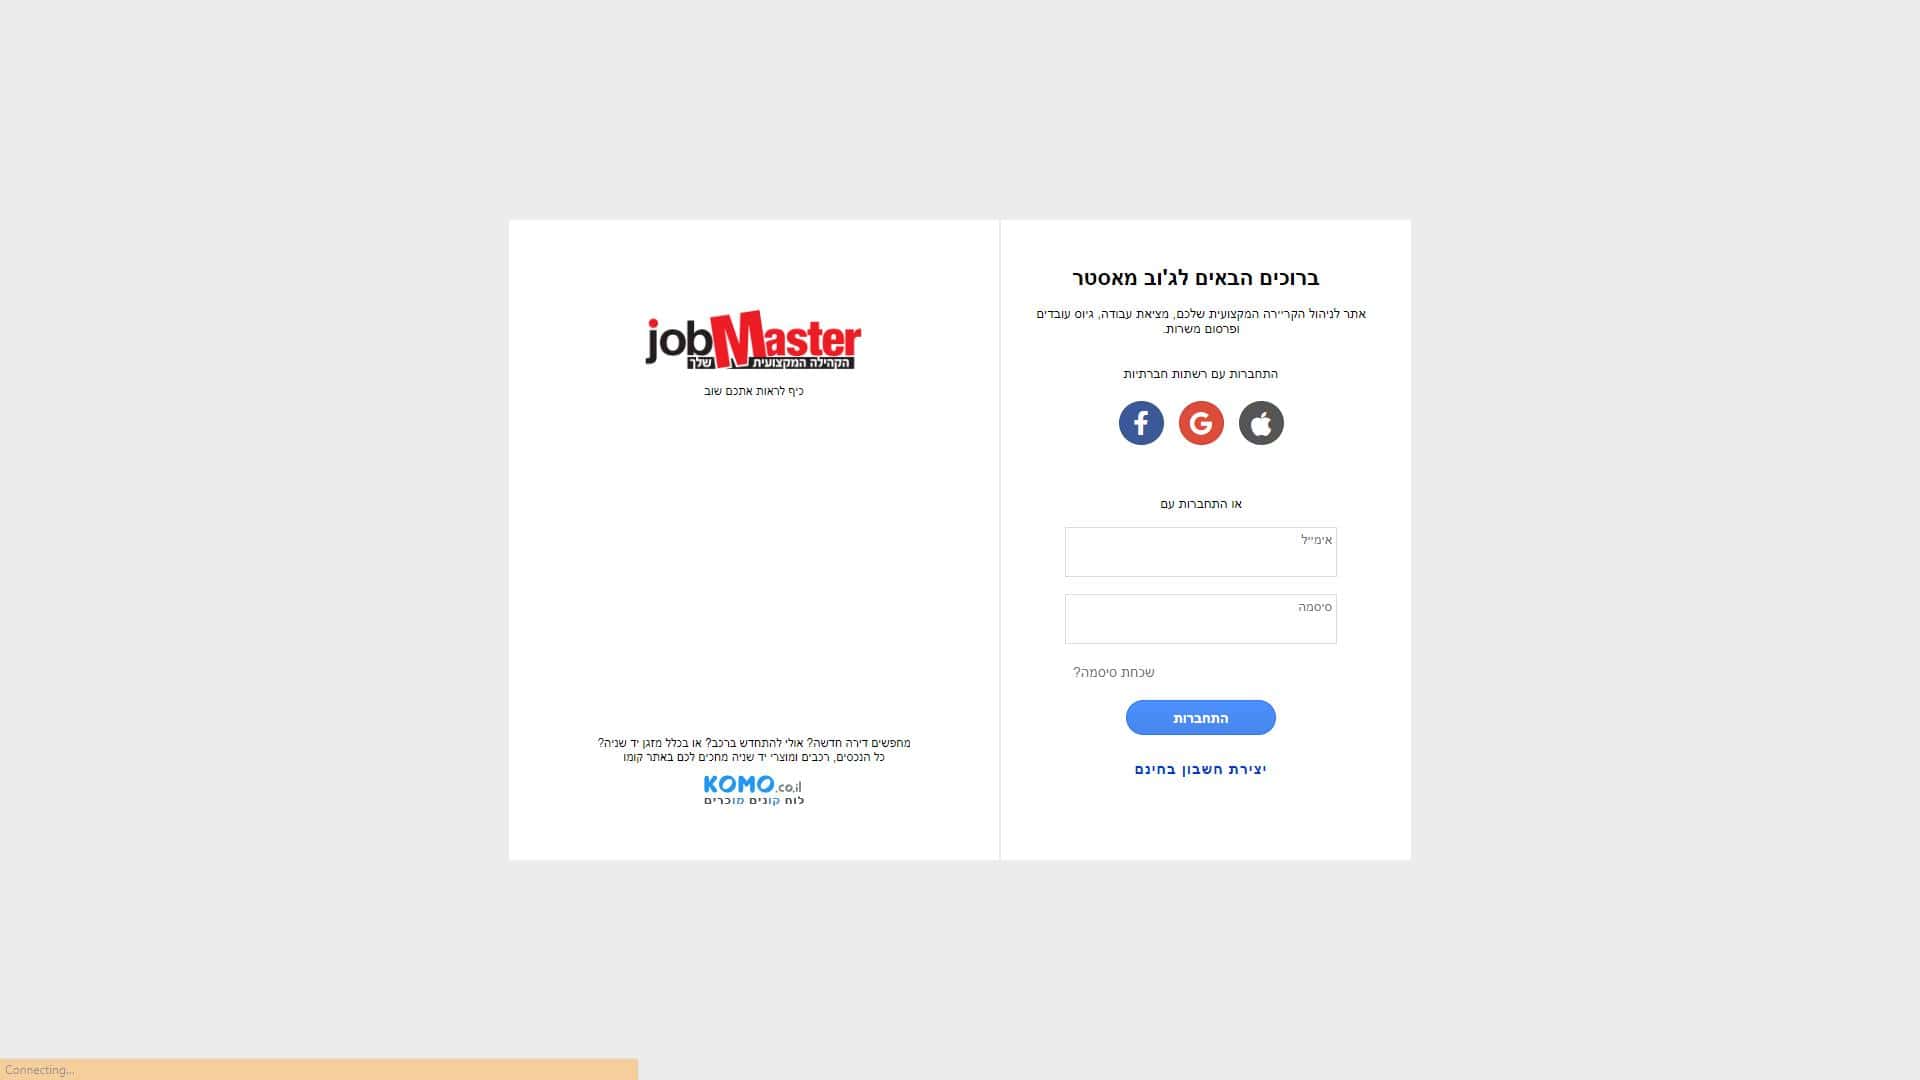 גוב מאסטר JobMaster טופס יצירת קשר צילום מסך